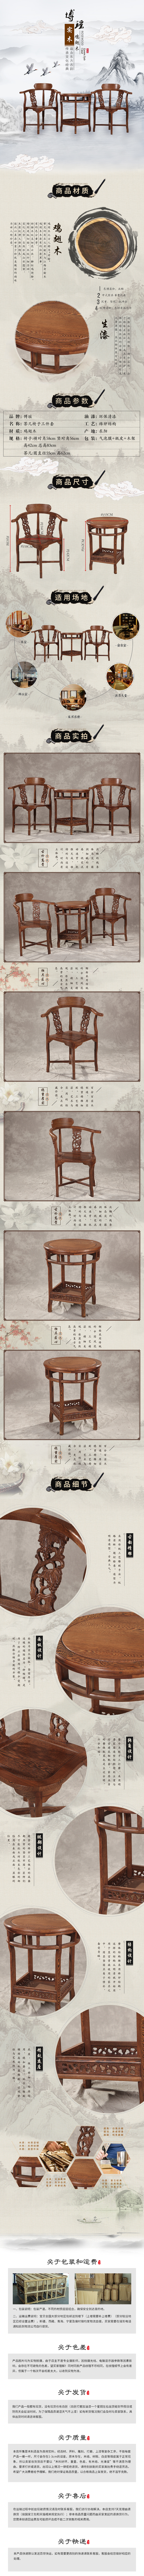 淘宝美工明祥高端复古中国风桌椅详情页作品